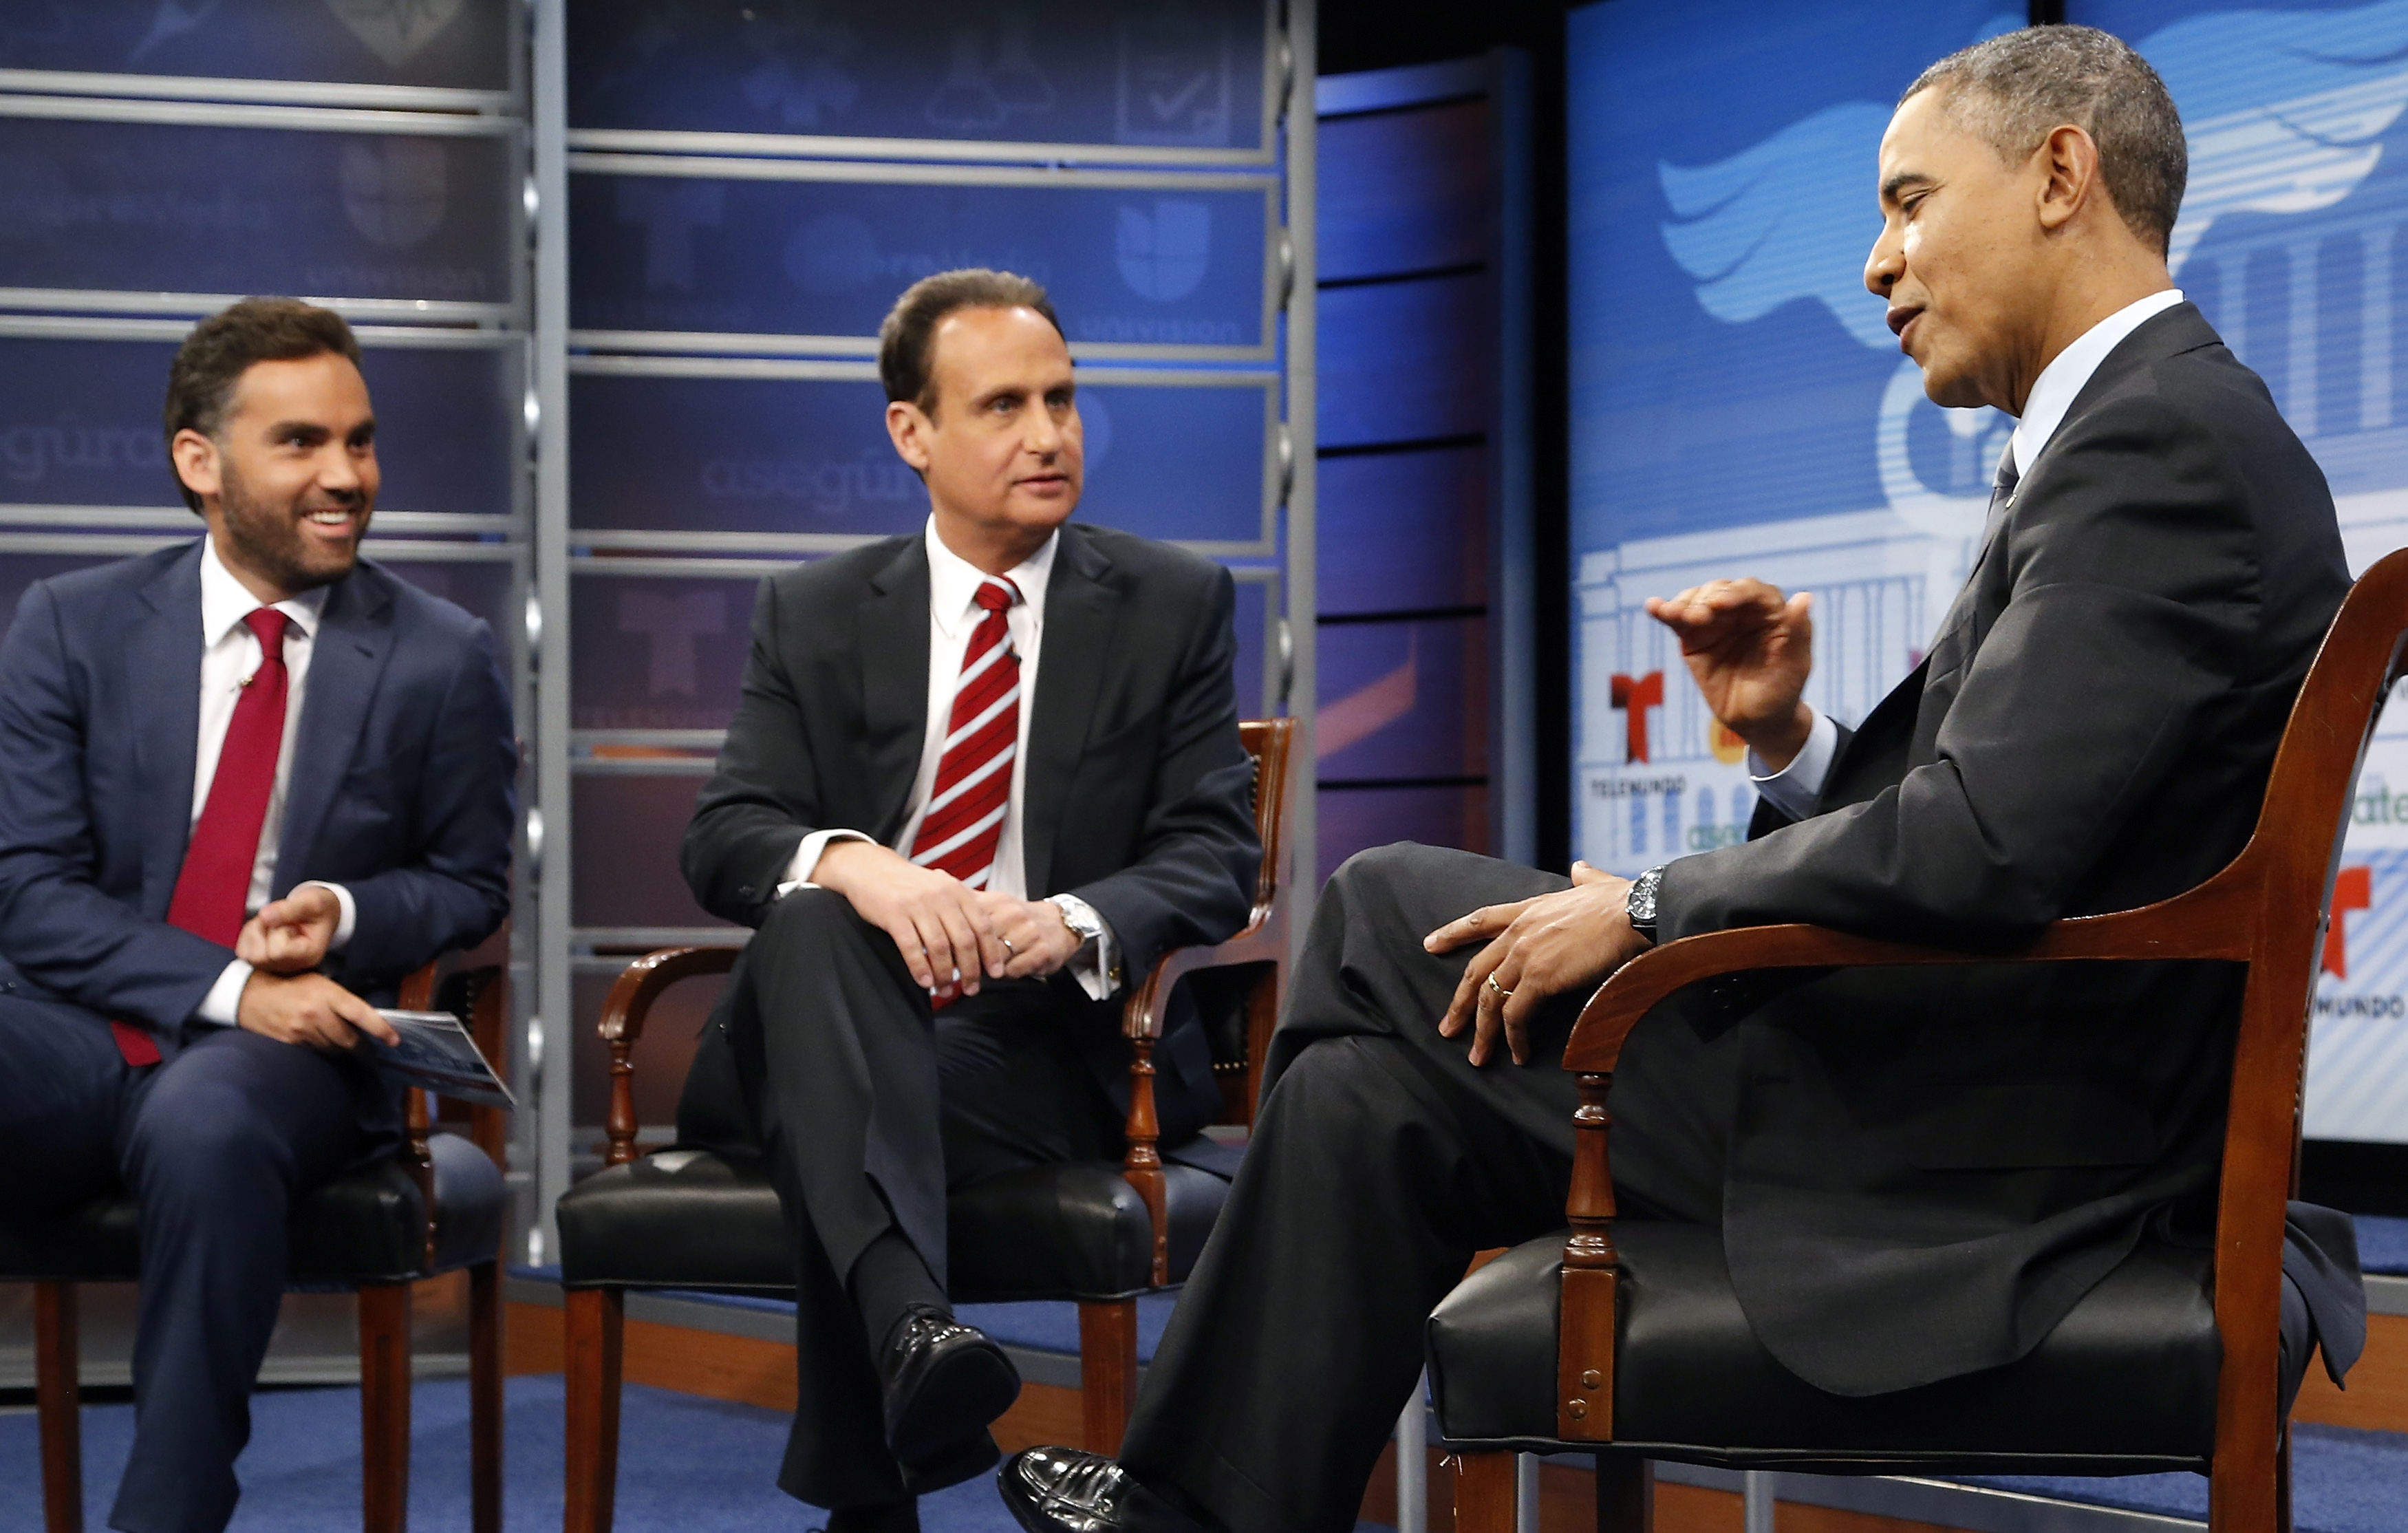 Obama talks with Acevedo and Diaz Balart at the Newseum in Washington